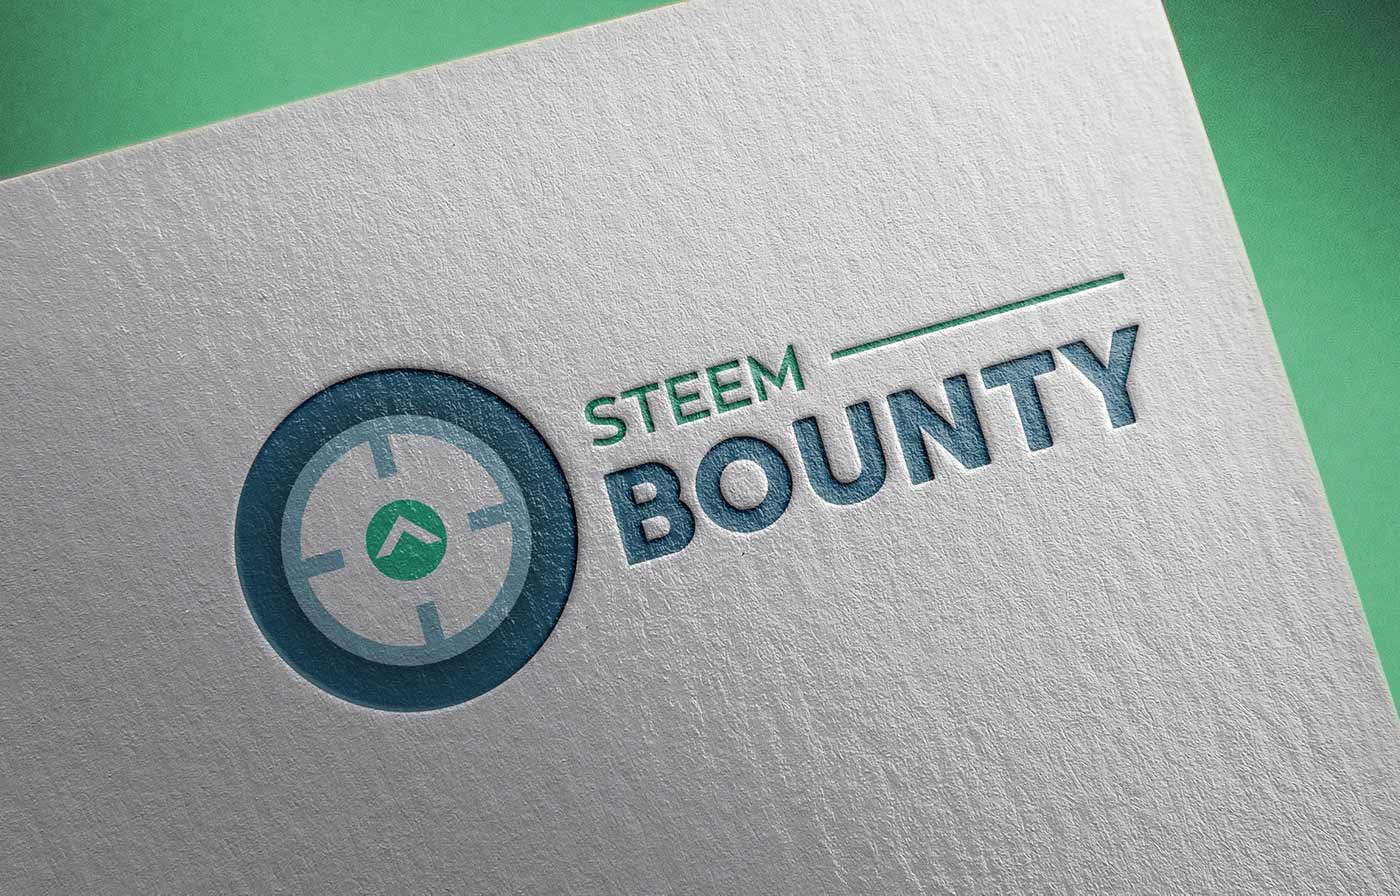 steem-bounty_printed-mockup.jpg